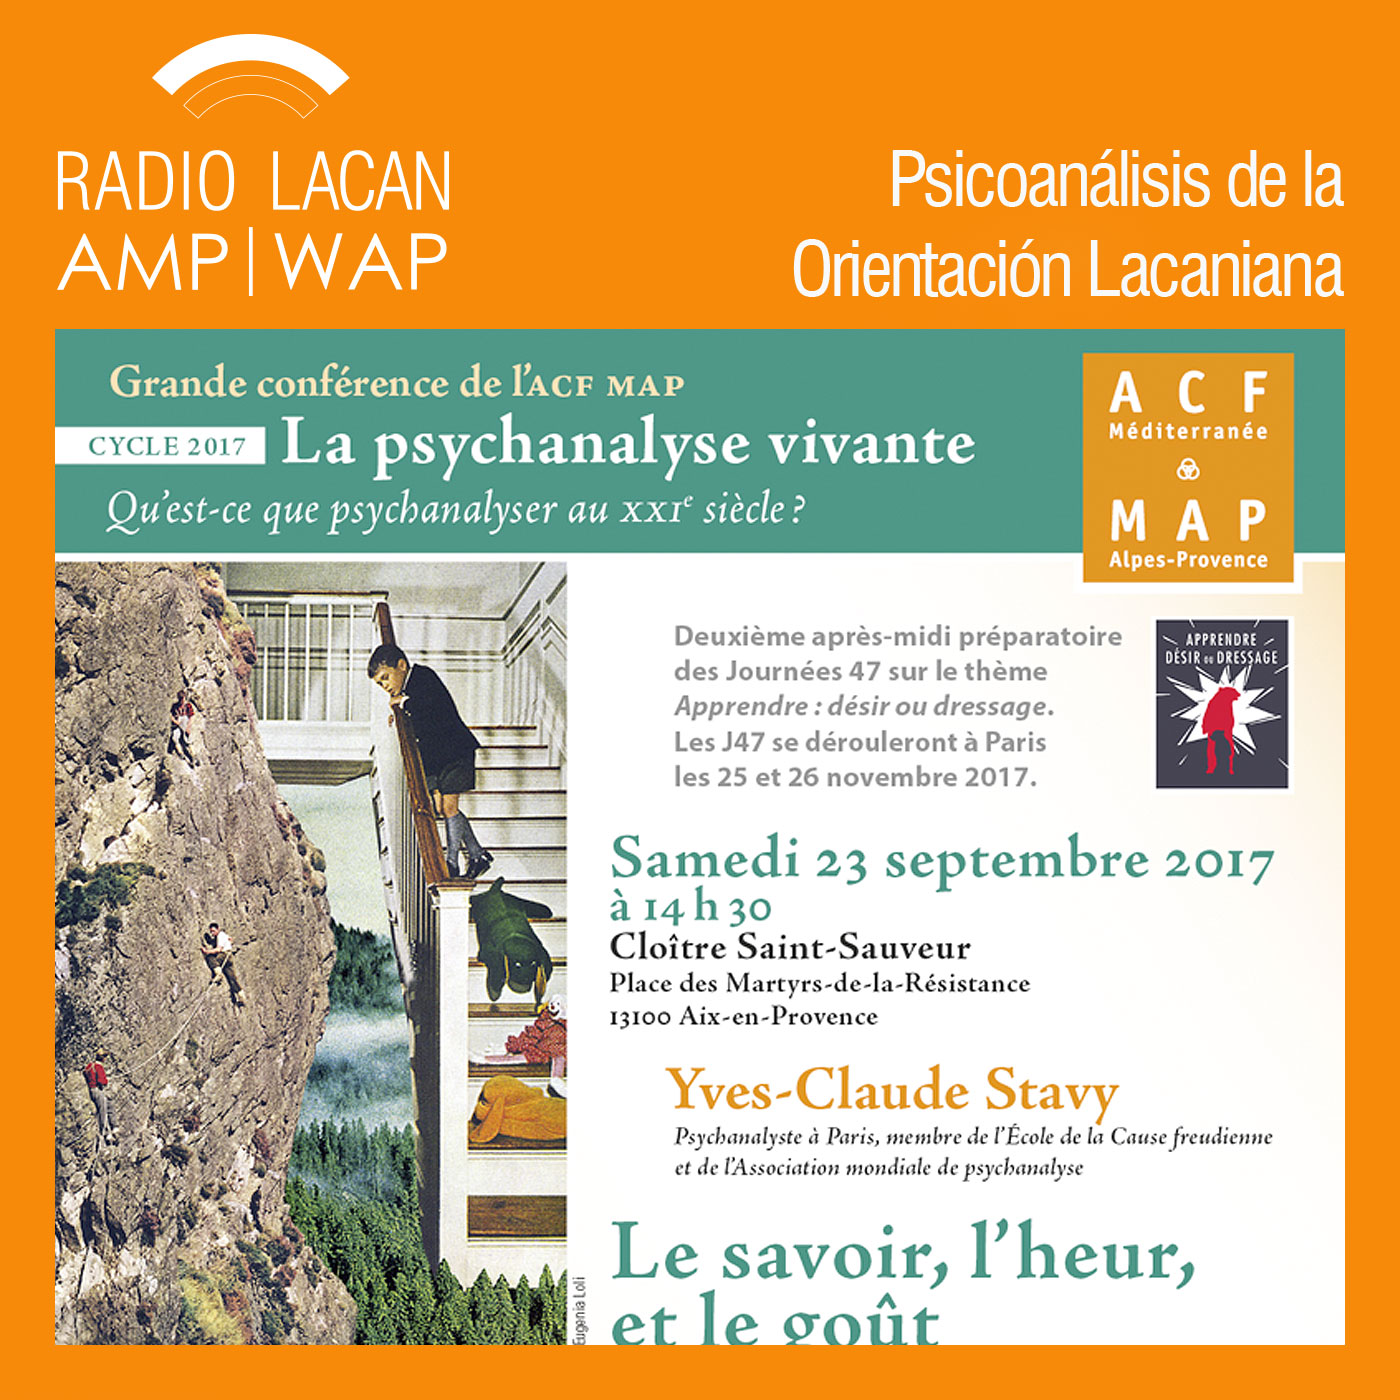 Conferencia de Yves-Claude Stavy en Aix- en- Provence: “El saber, la dicha y el gusto”. Parte 2. - Episodio 2